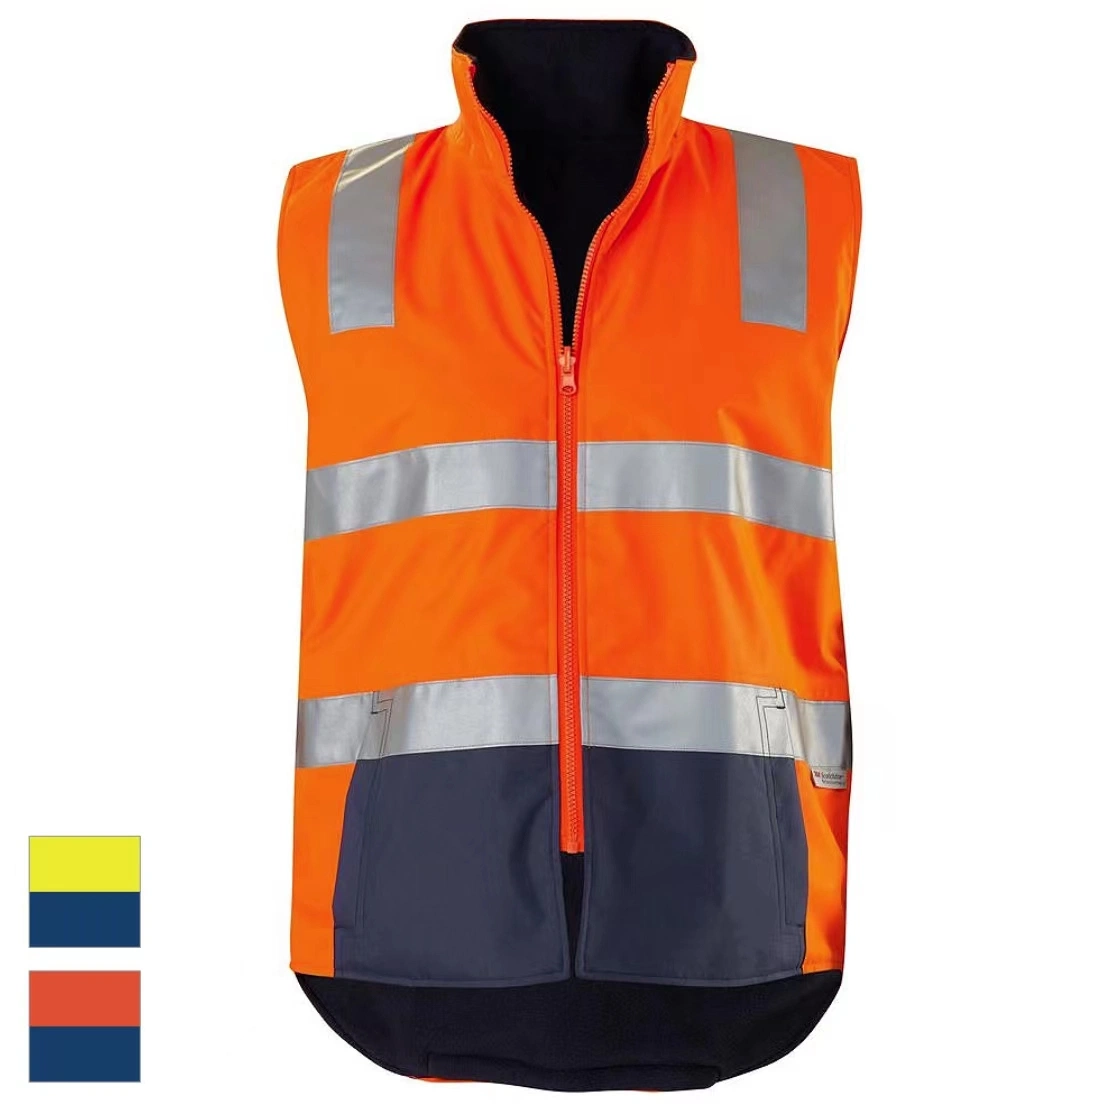 Armor Work Vest Workwear Hi Vis Jacket Safety Uniform Reversible Jacket